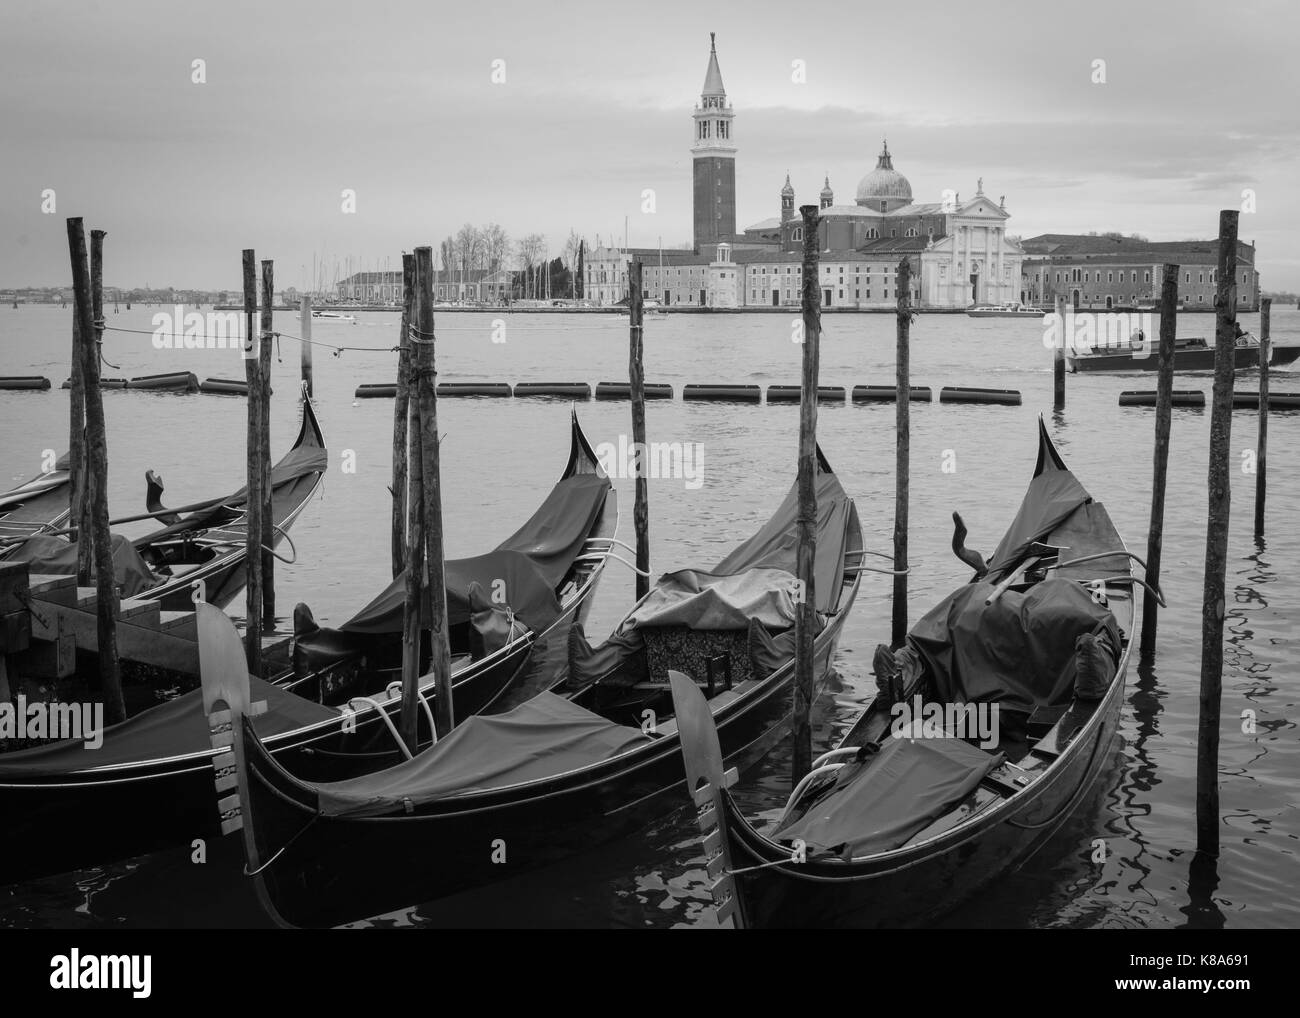 Venedig - Italien - die venezianischen Gondeln am Canale Grande und die Kirche San Giorgio Maggiore im Hintergrund. Stockfoto